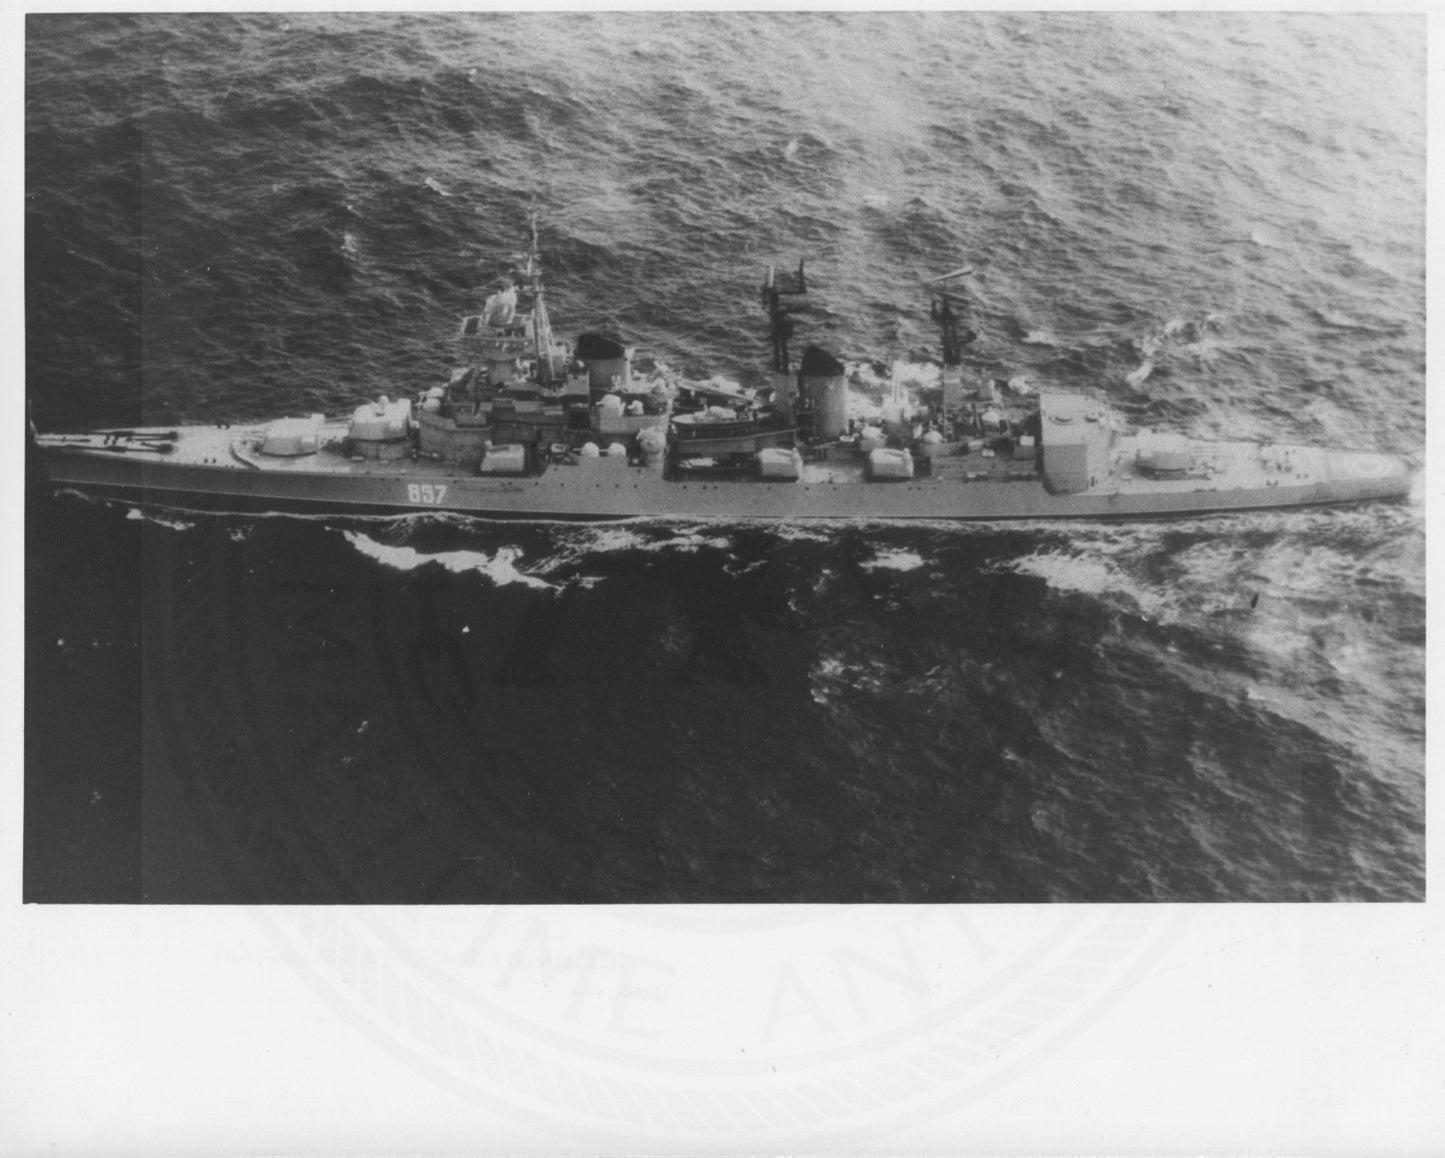 Soviet missile cruiser Sverdlov class